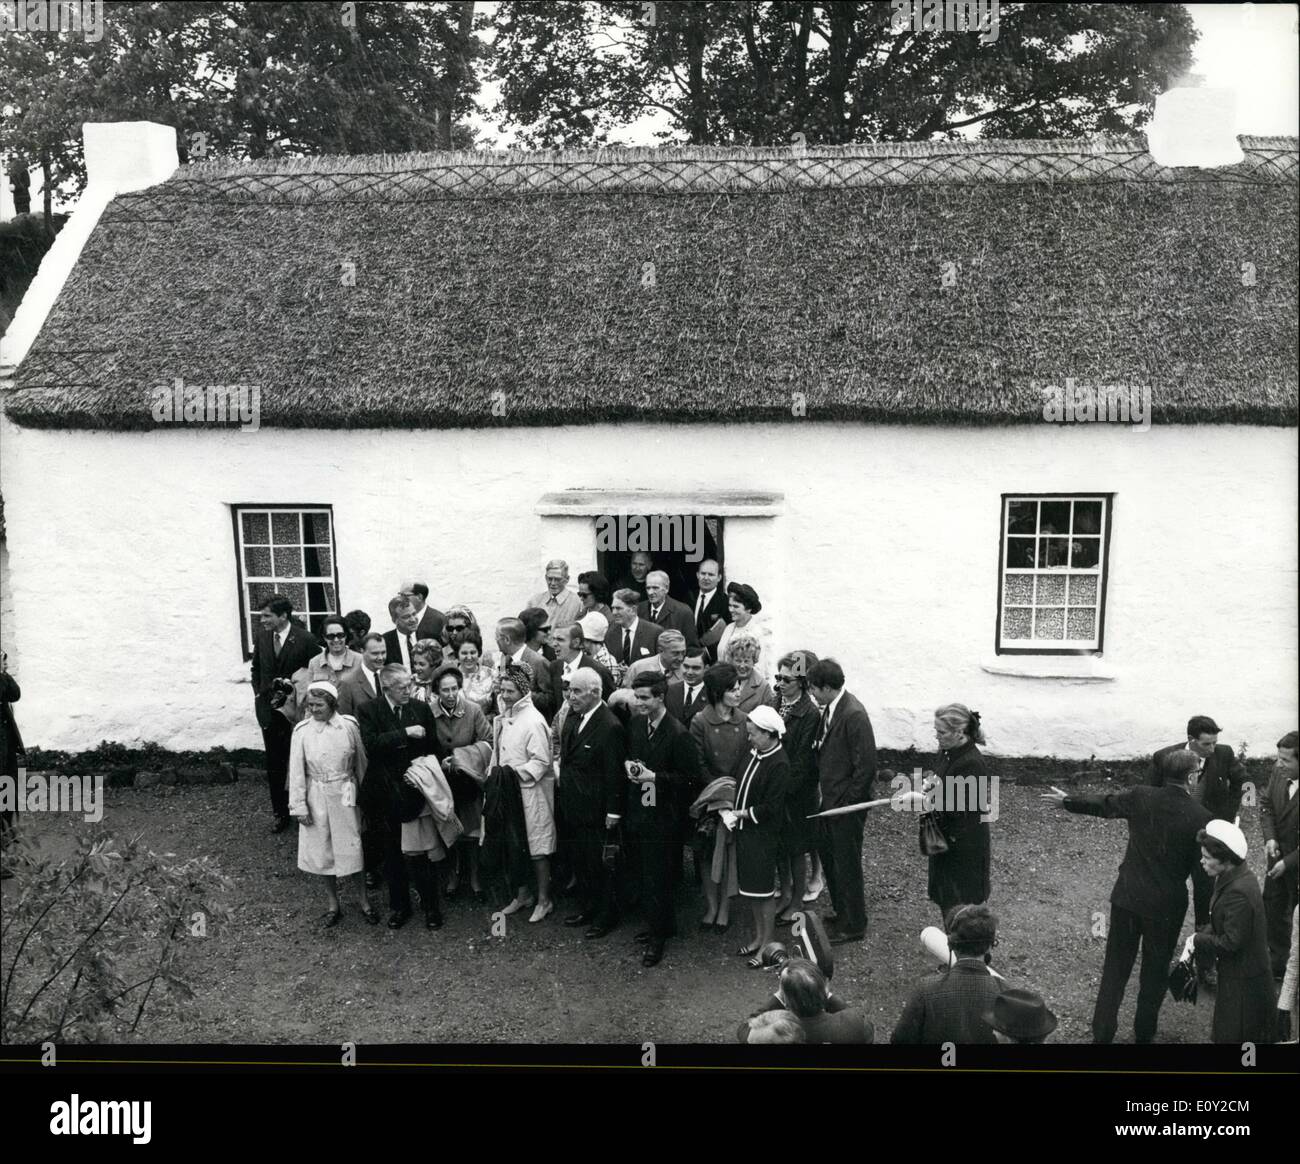 Juin 06, 1968 - il Mellon Voyage visite en famille d'accueil du fondateur en Ulster cinquante membres de la famille Mellon l'un des plus grandes dynasties financières. Fait un pèlerinage au chalet en Ulster, où l'homme qui a commencé il est né. Thomas Mellon, 5, et ses parents établis en 1818 à Camp Hill Cottage, Mountjoy, près de Omagh, Co Banque D'Images